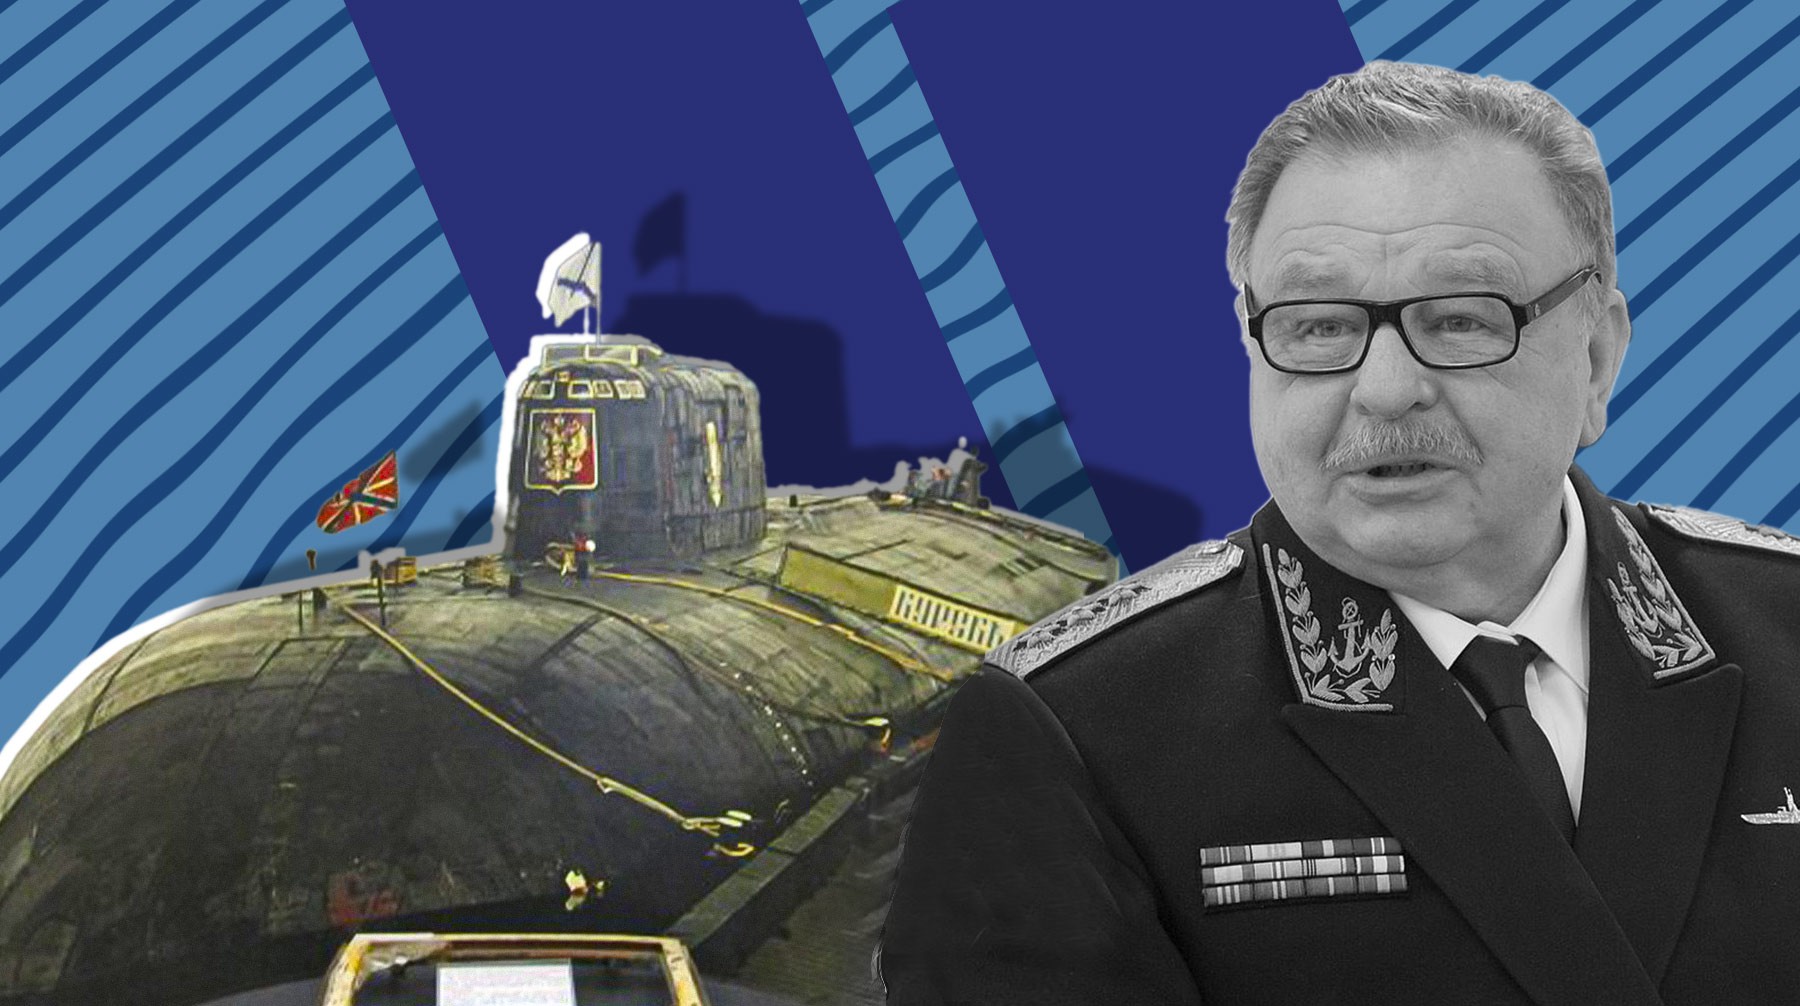 Dailystorm - О субмарине НАТО было известно еще в 2000 году: адмирал Попов уточнил свои слова о гибели «Курска»